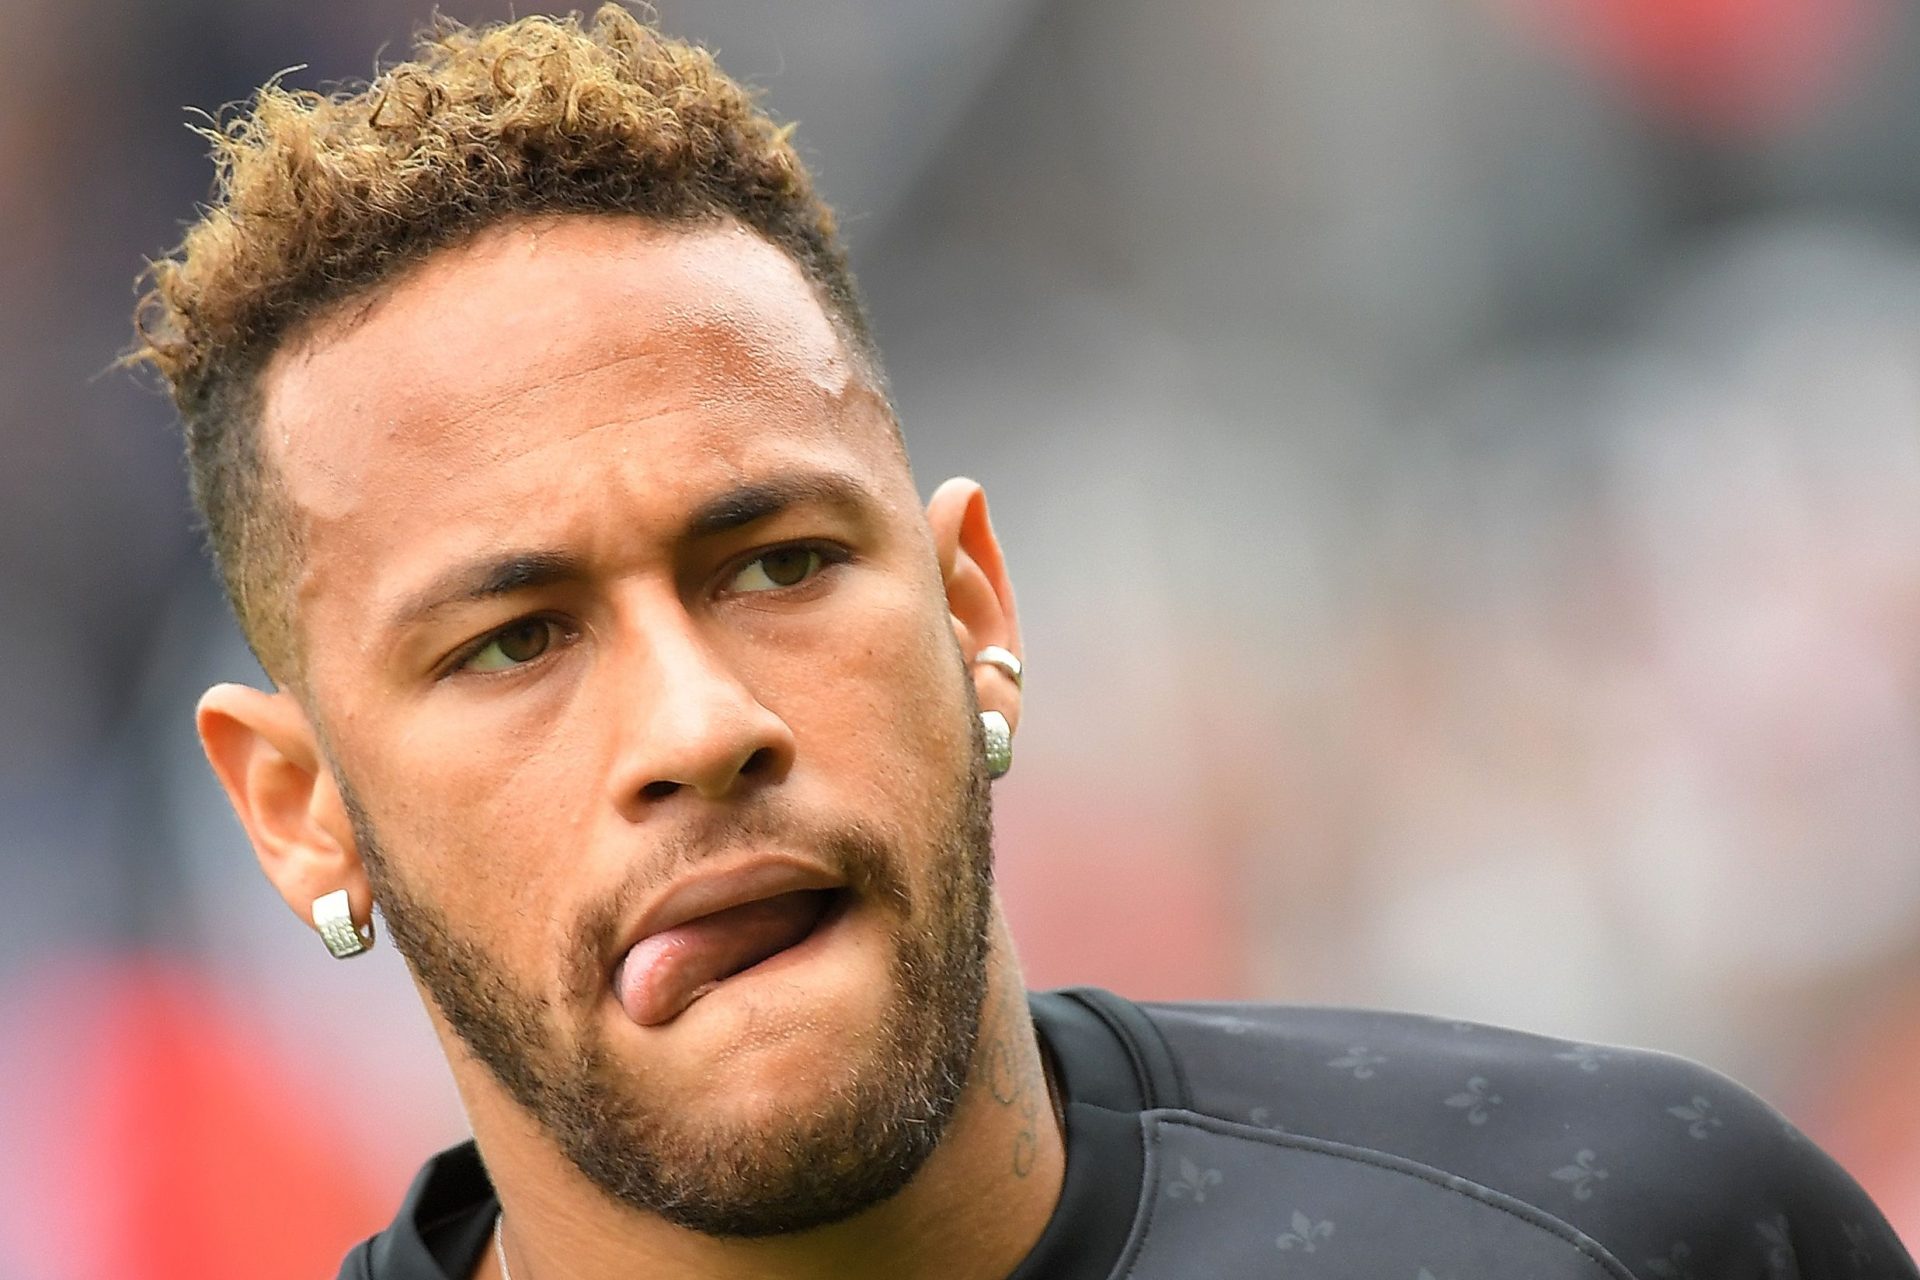 Neymar cobra para aplaudir no fim dos jogos. Sabe quanto leva?